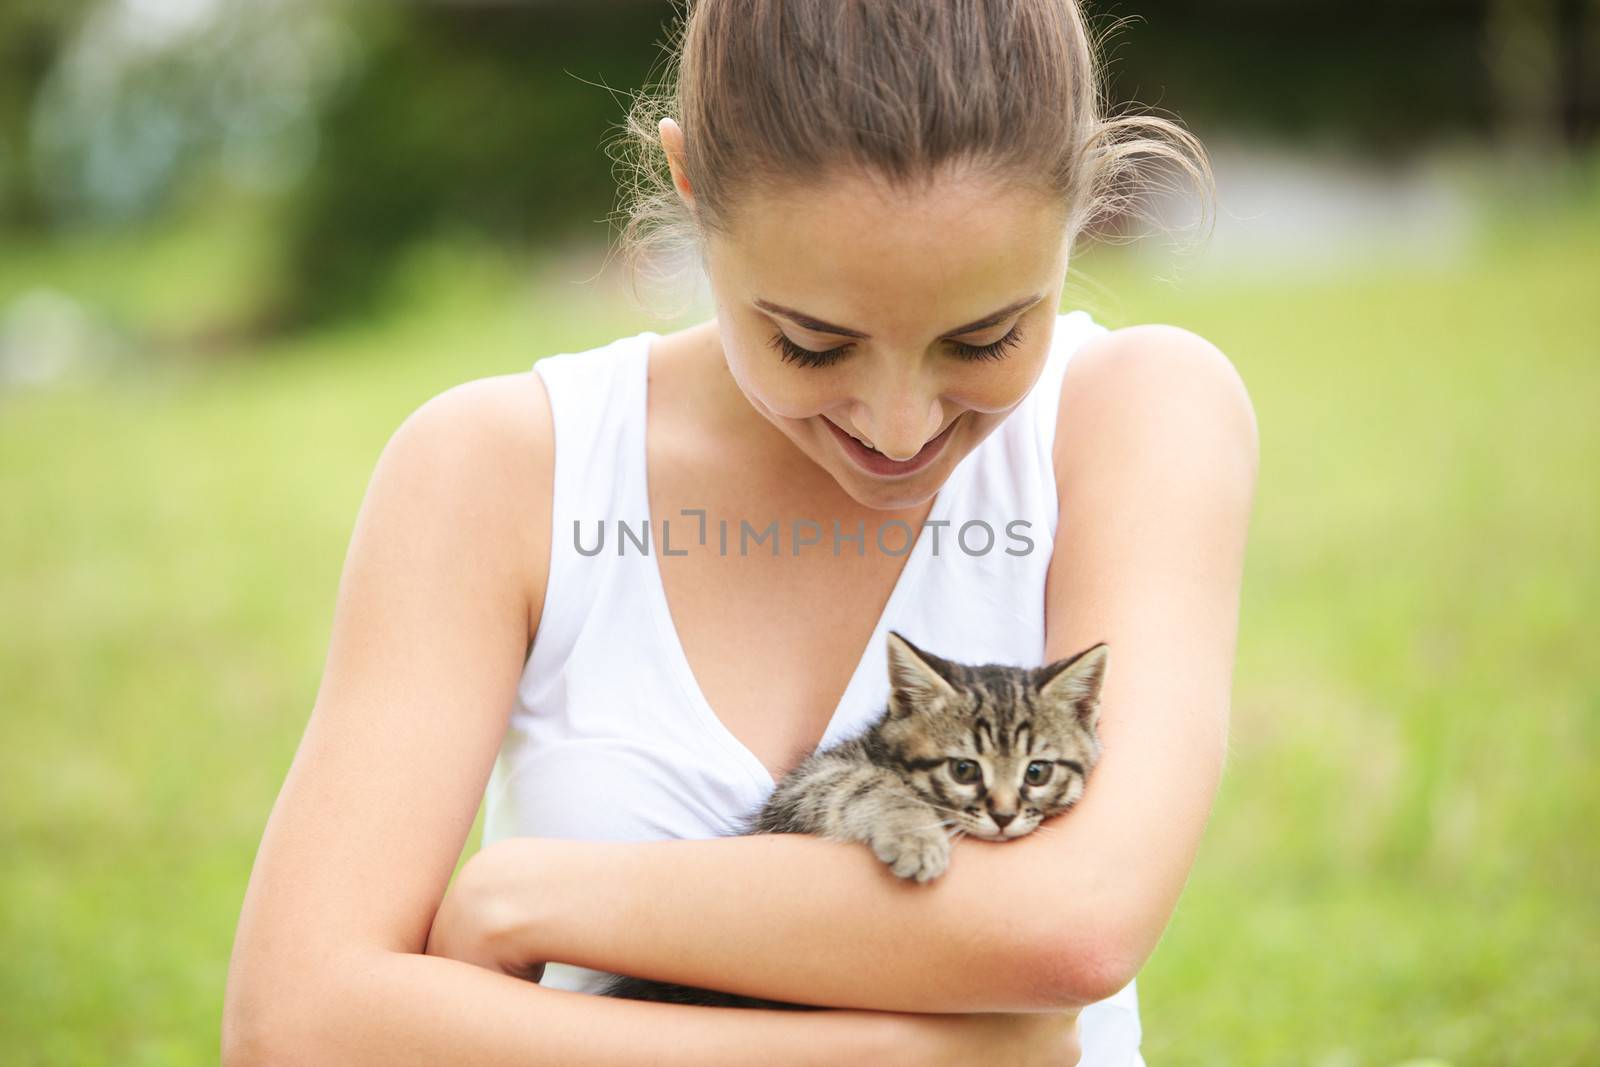 Beautiful young woman embracing a cute kitten outdoors